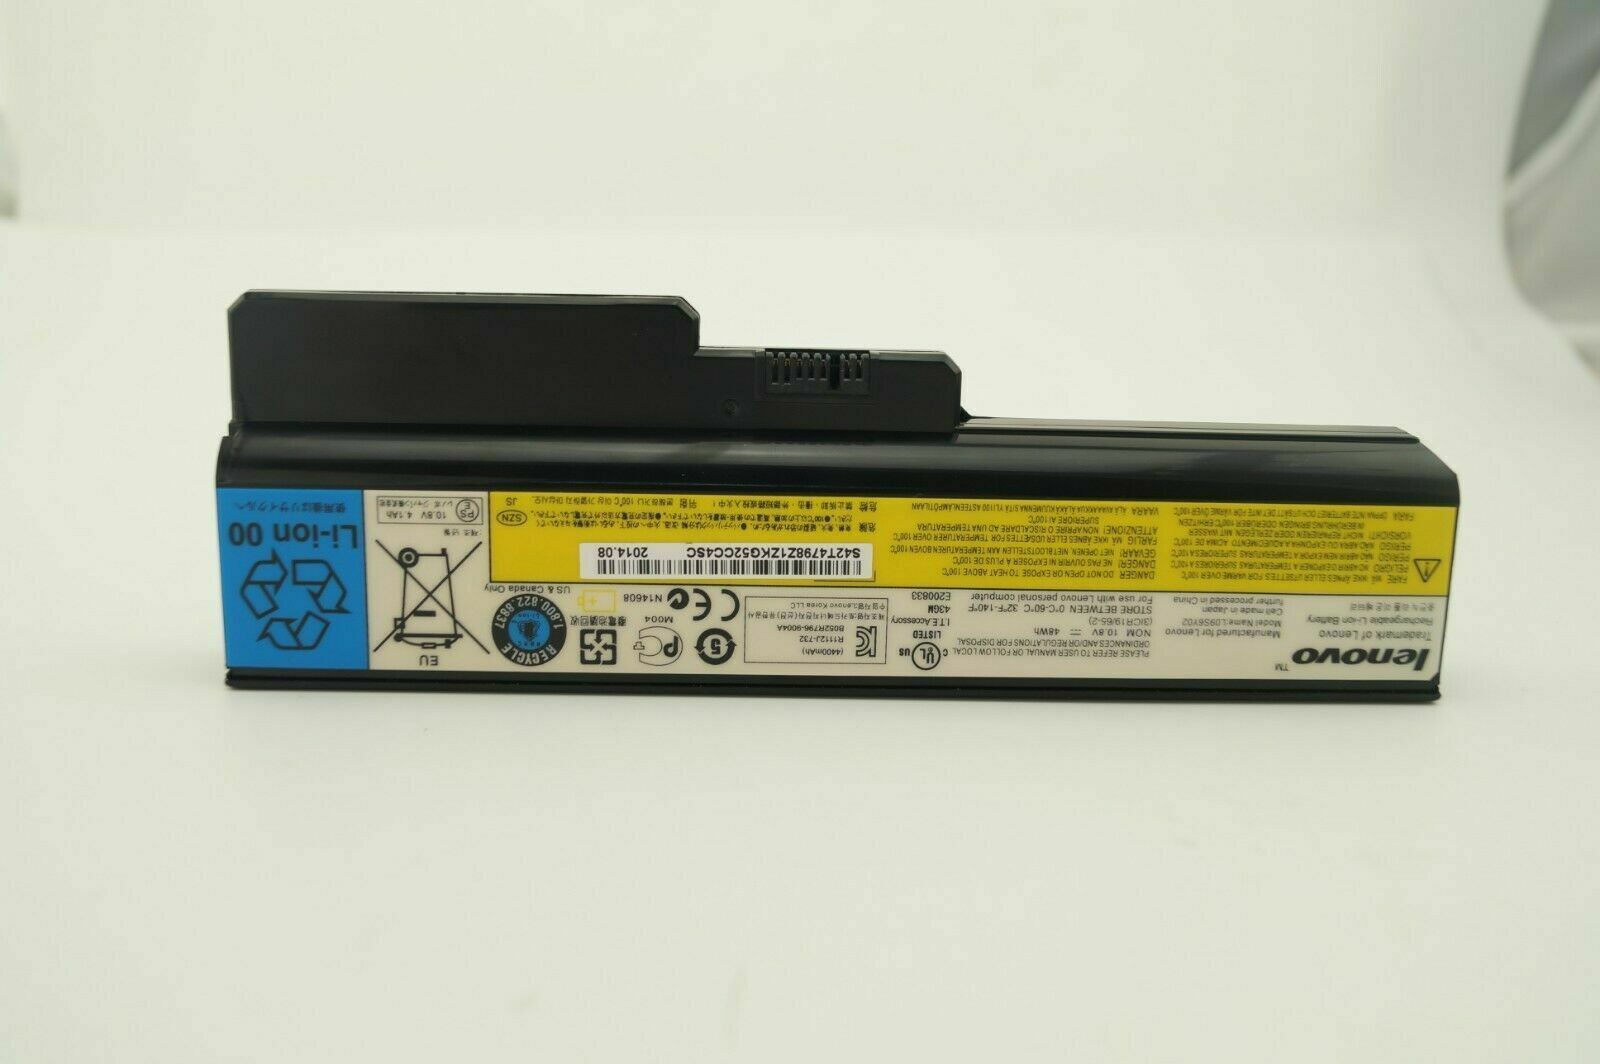 Original L09S6Y02 Laptop Battery For Lenovo G460 G465 G470 G560 G565 G570 G575 G770 Z460